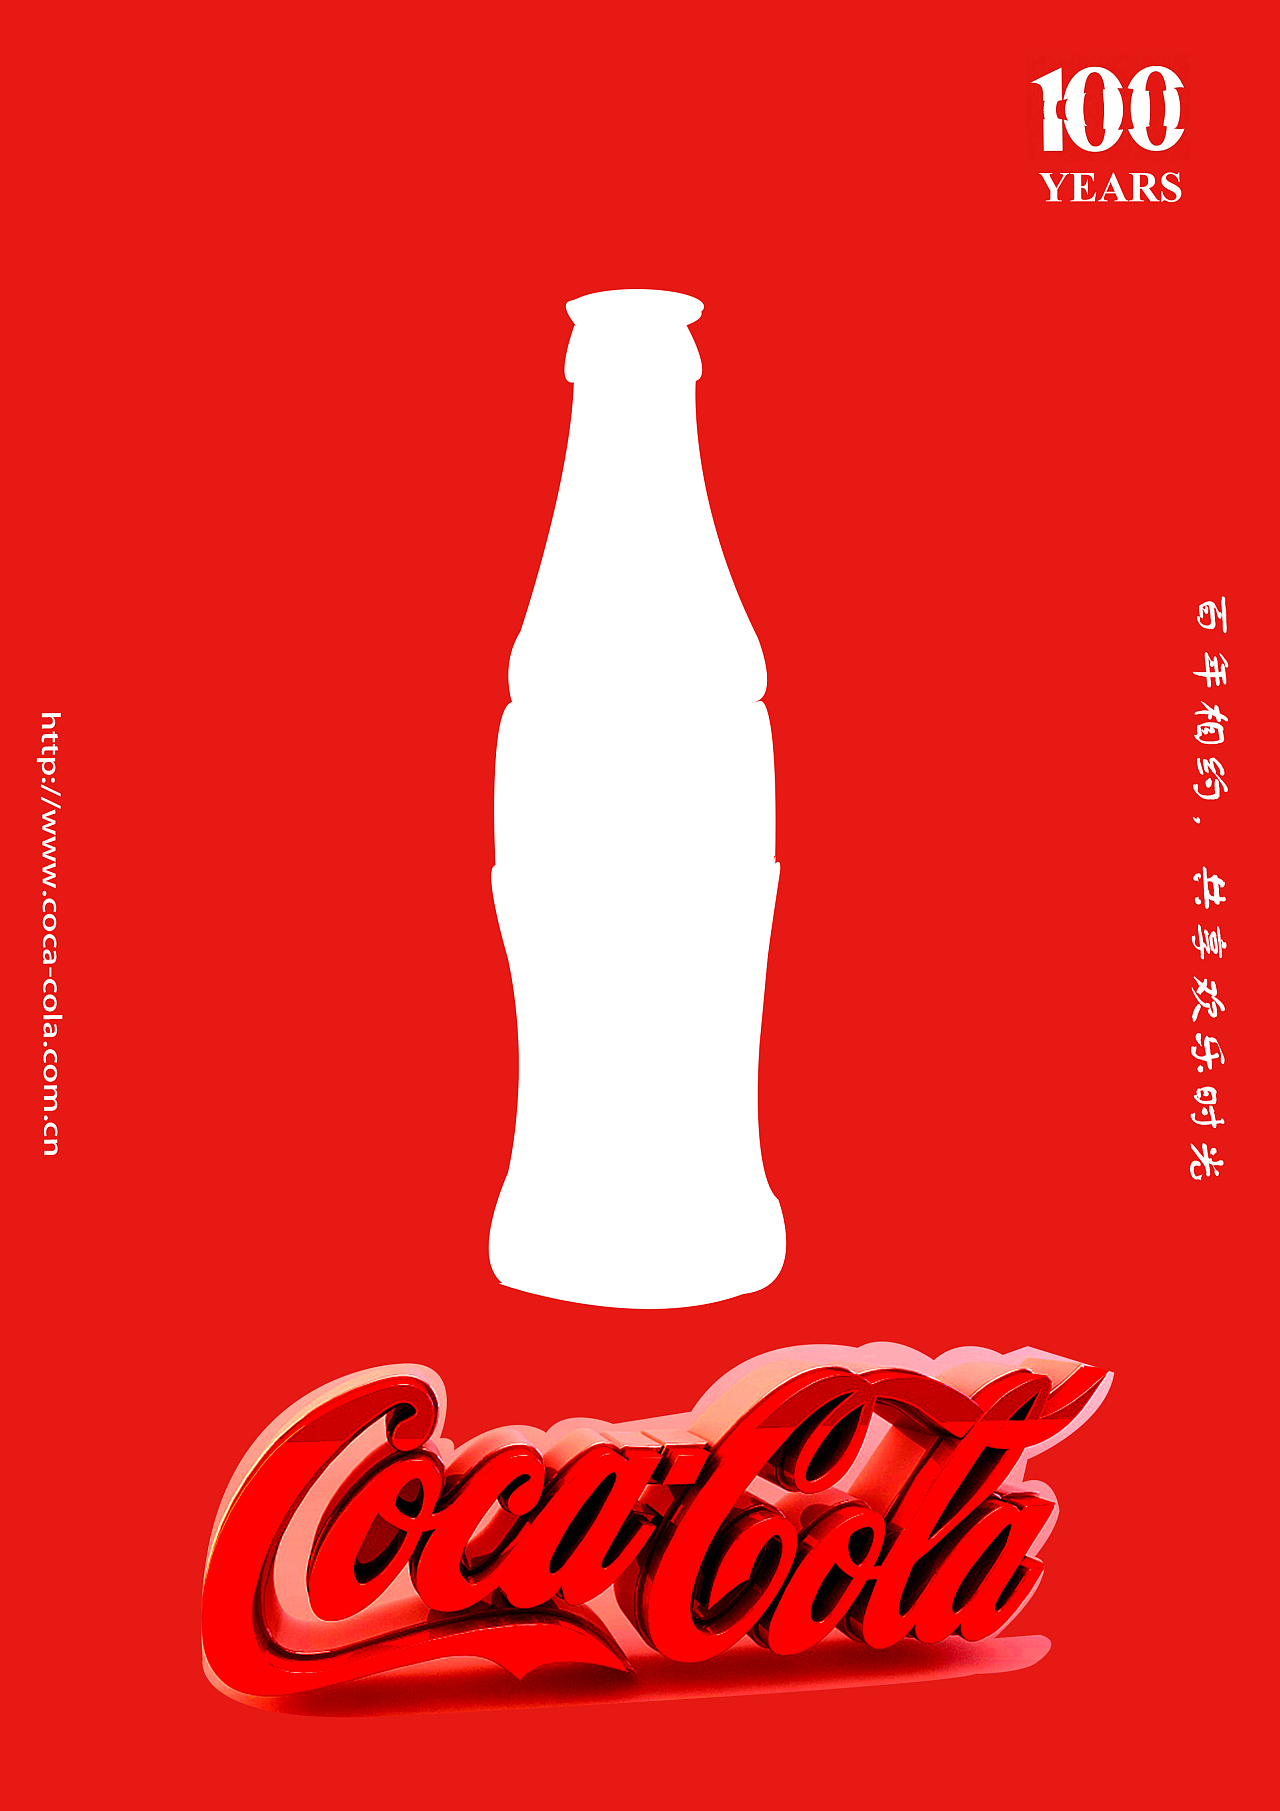 三张广告组成一个百年相约的系列,为可口可乐百年作为广告海报